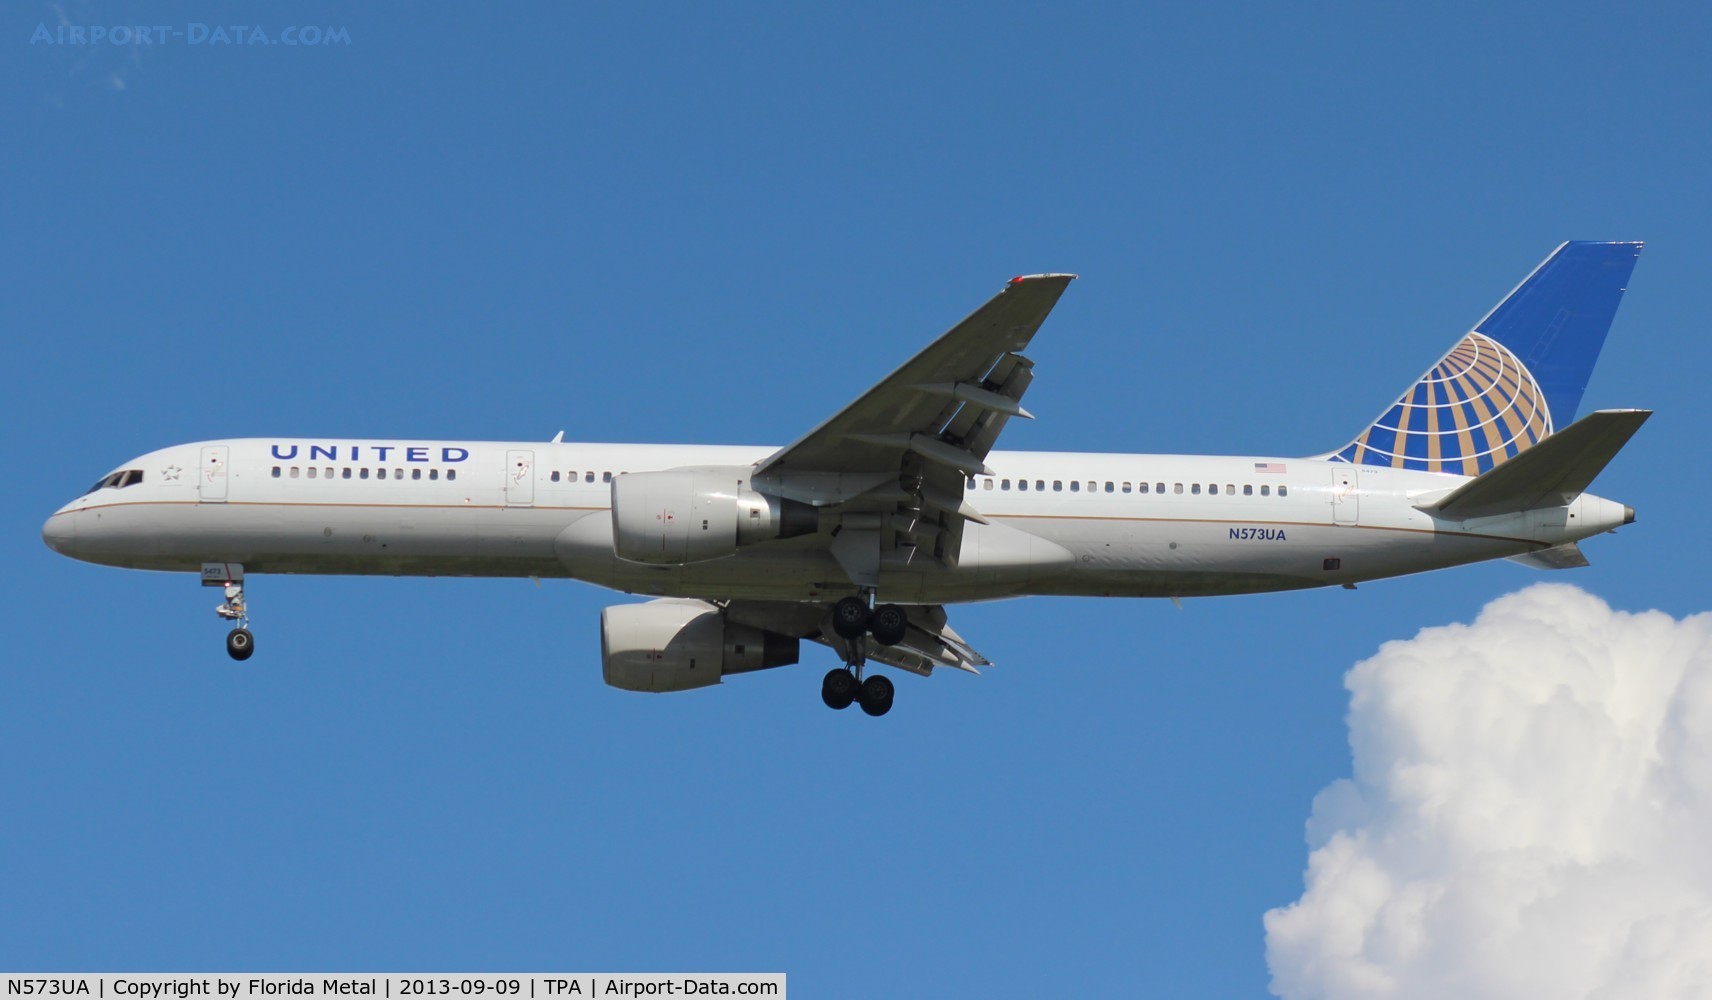 N573UA, 1992 Boeing 757-222 C/N 26685, United 757-200